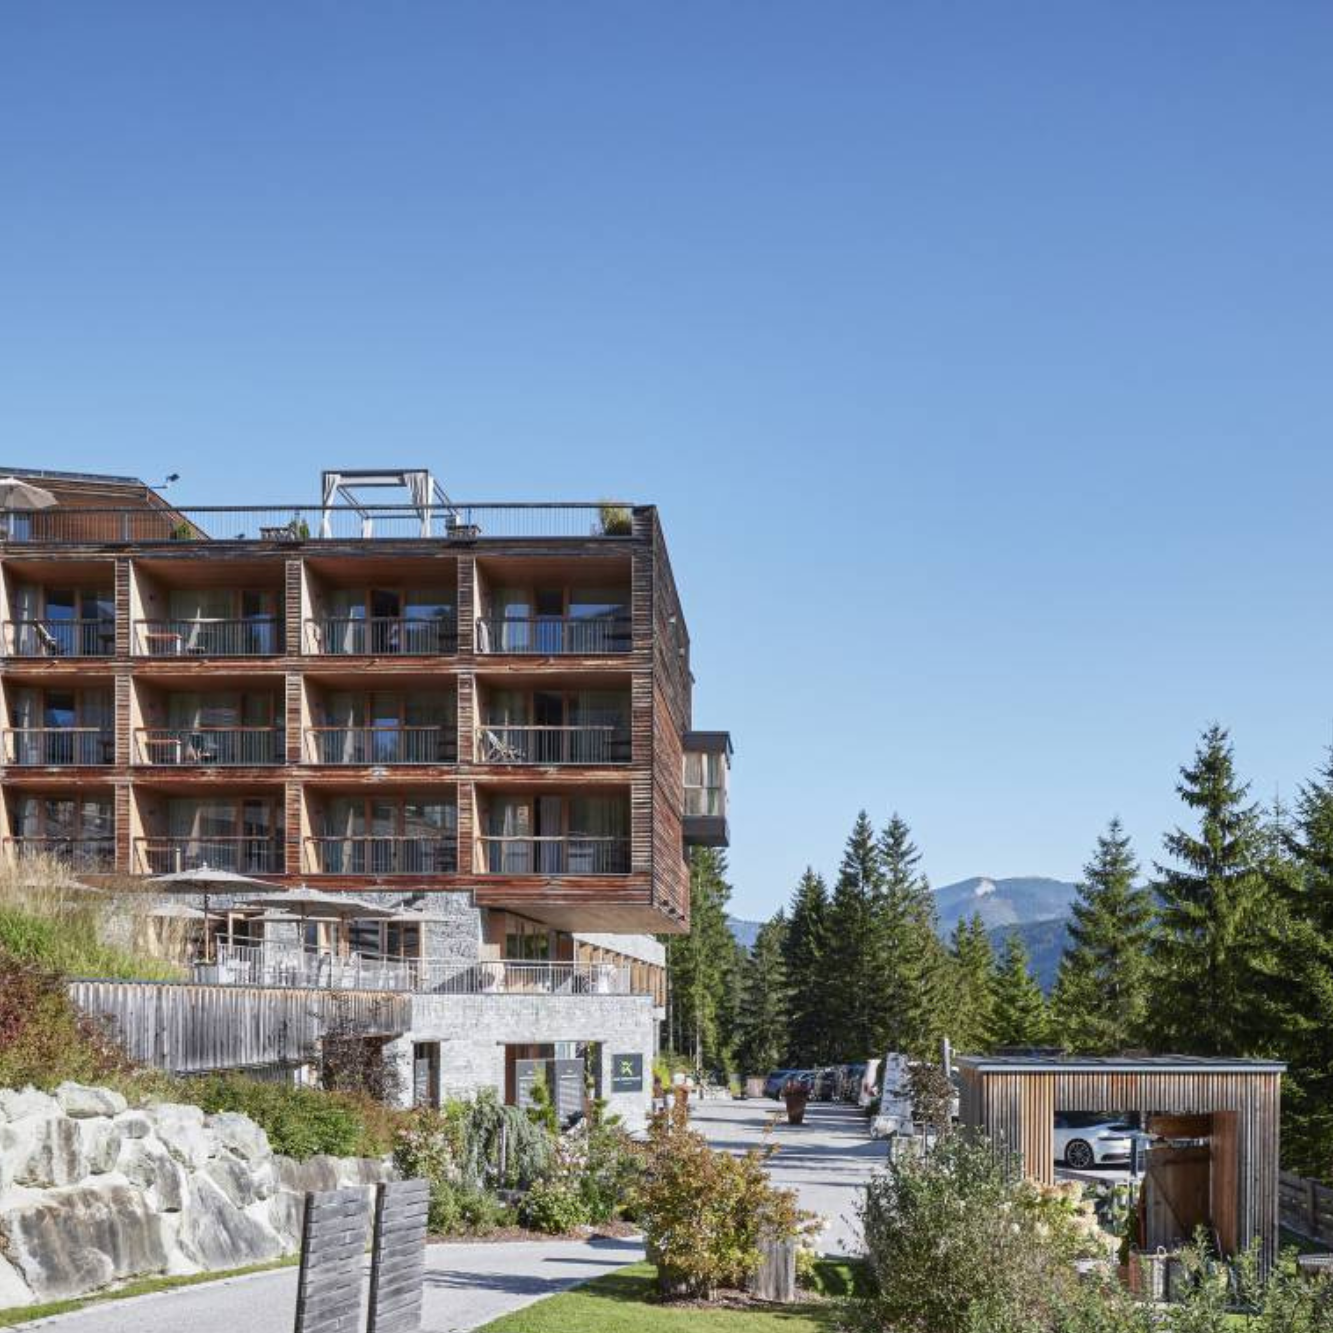 Ein Hotel aus Holz mit großen Balkonen und Fenstern